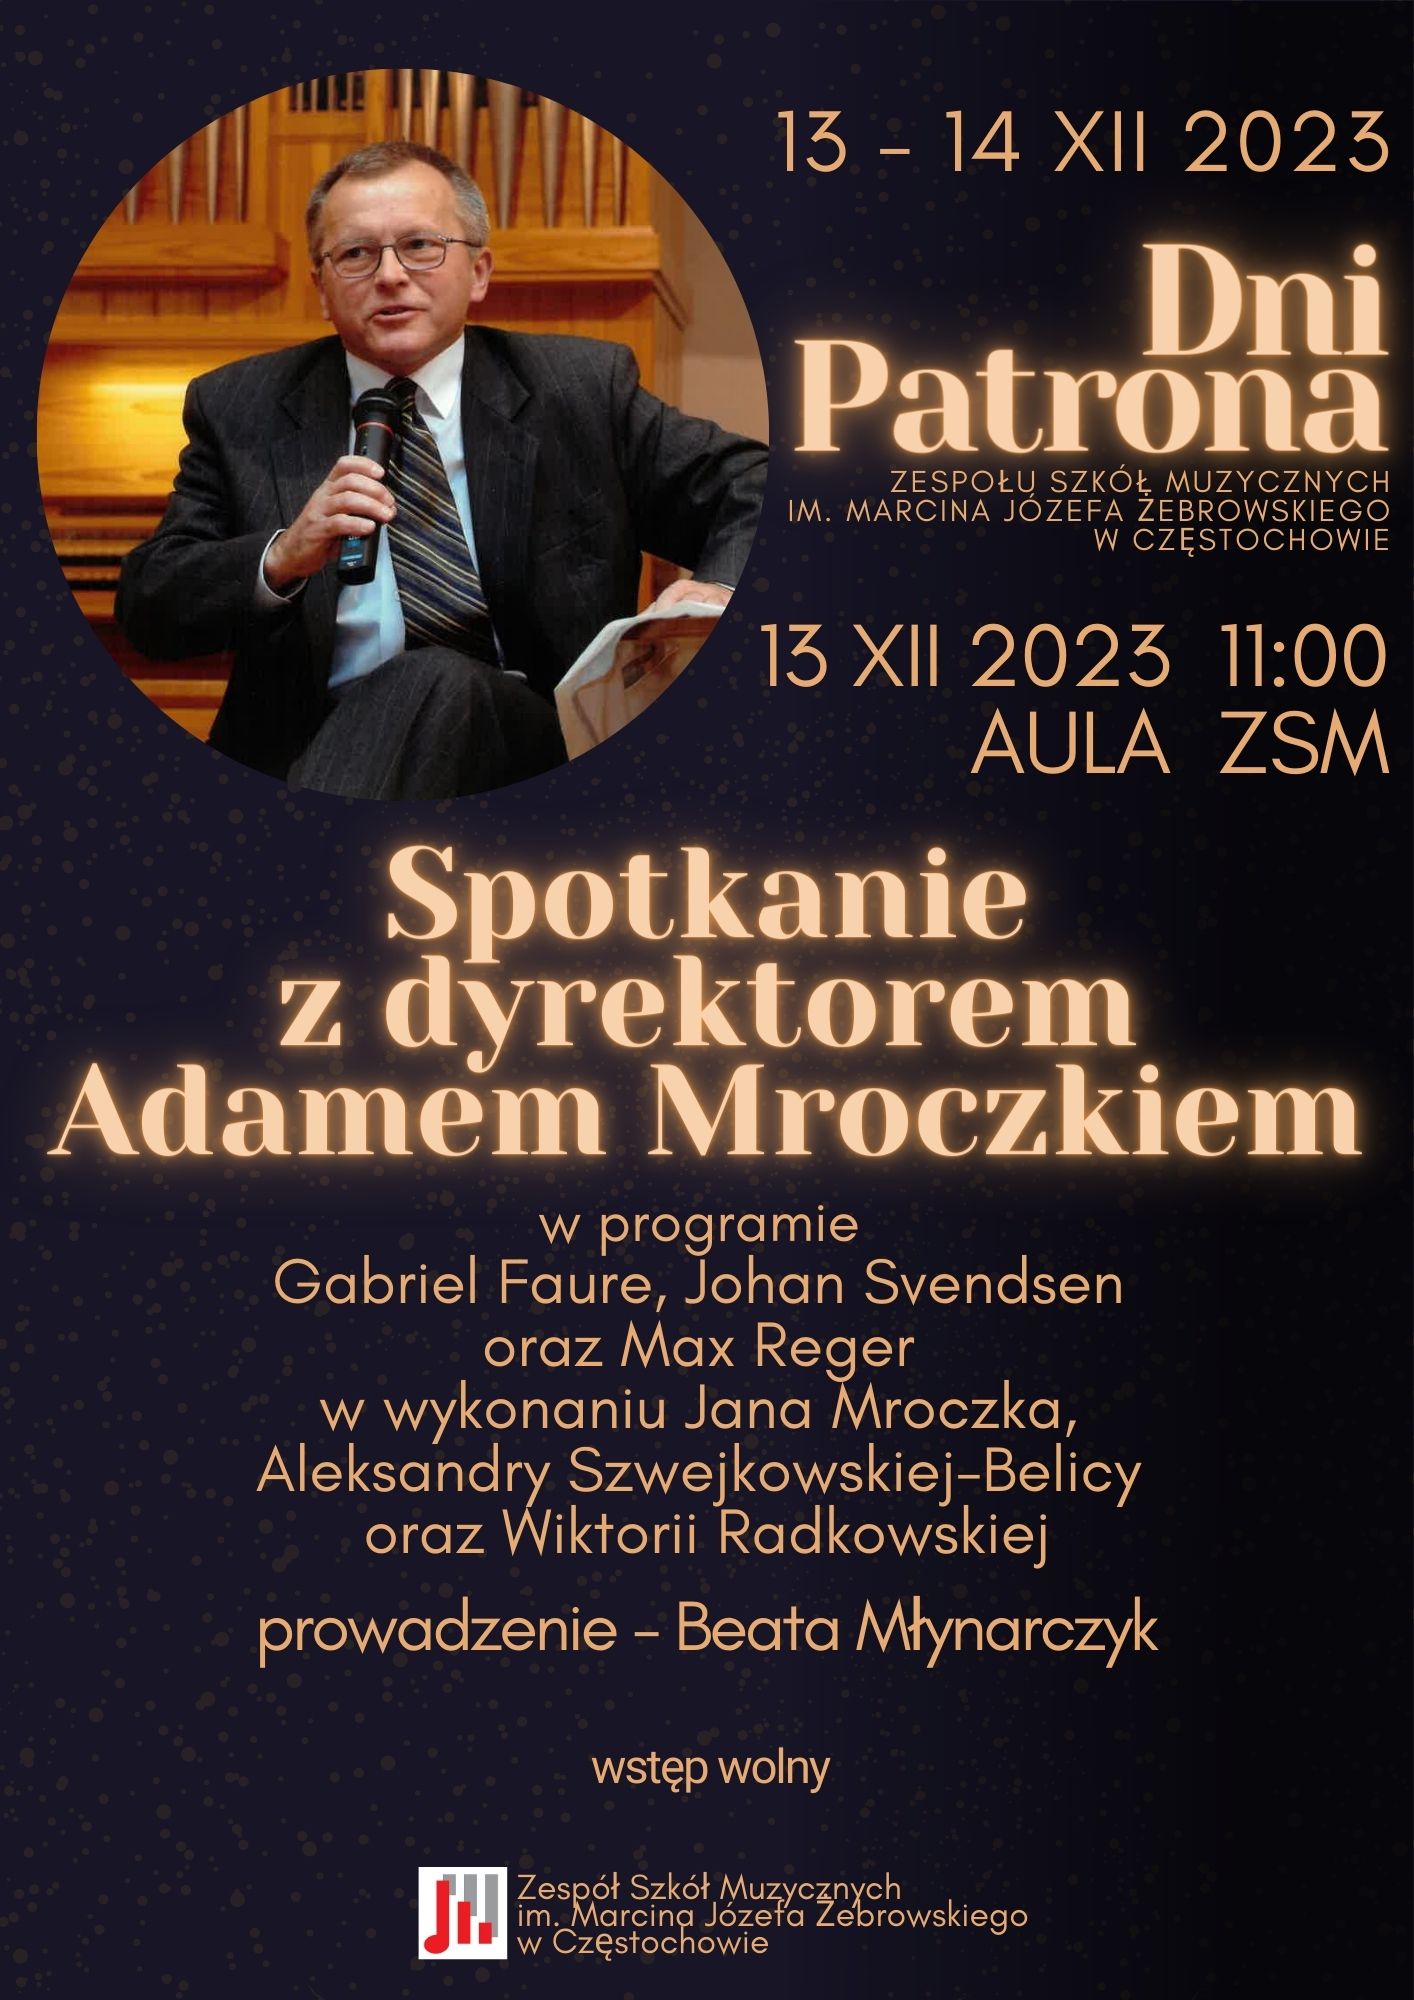 Czarne tło, na górze po lewej stronie zdjęcie Adama Mroczka, informacje dotyczące spotkania z p. Mroczkiem 13 grudnia 2023 roku o godzinie 11.00 w Auli ZSM